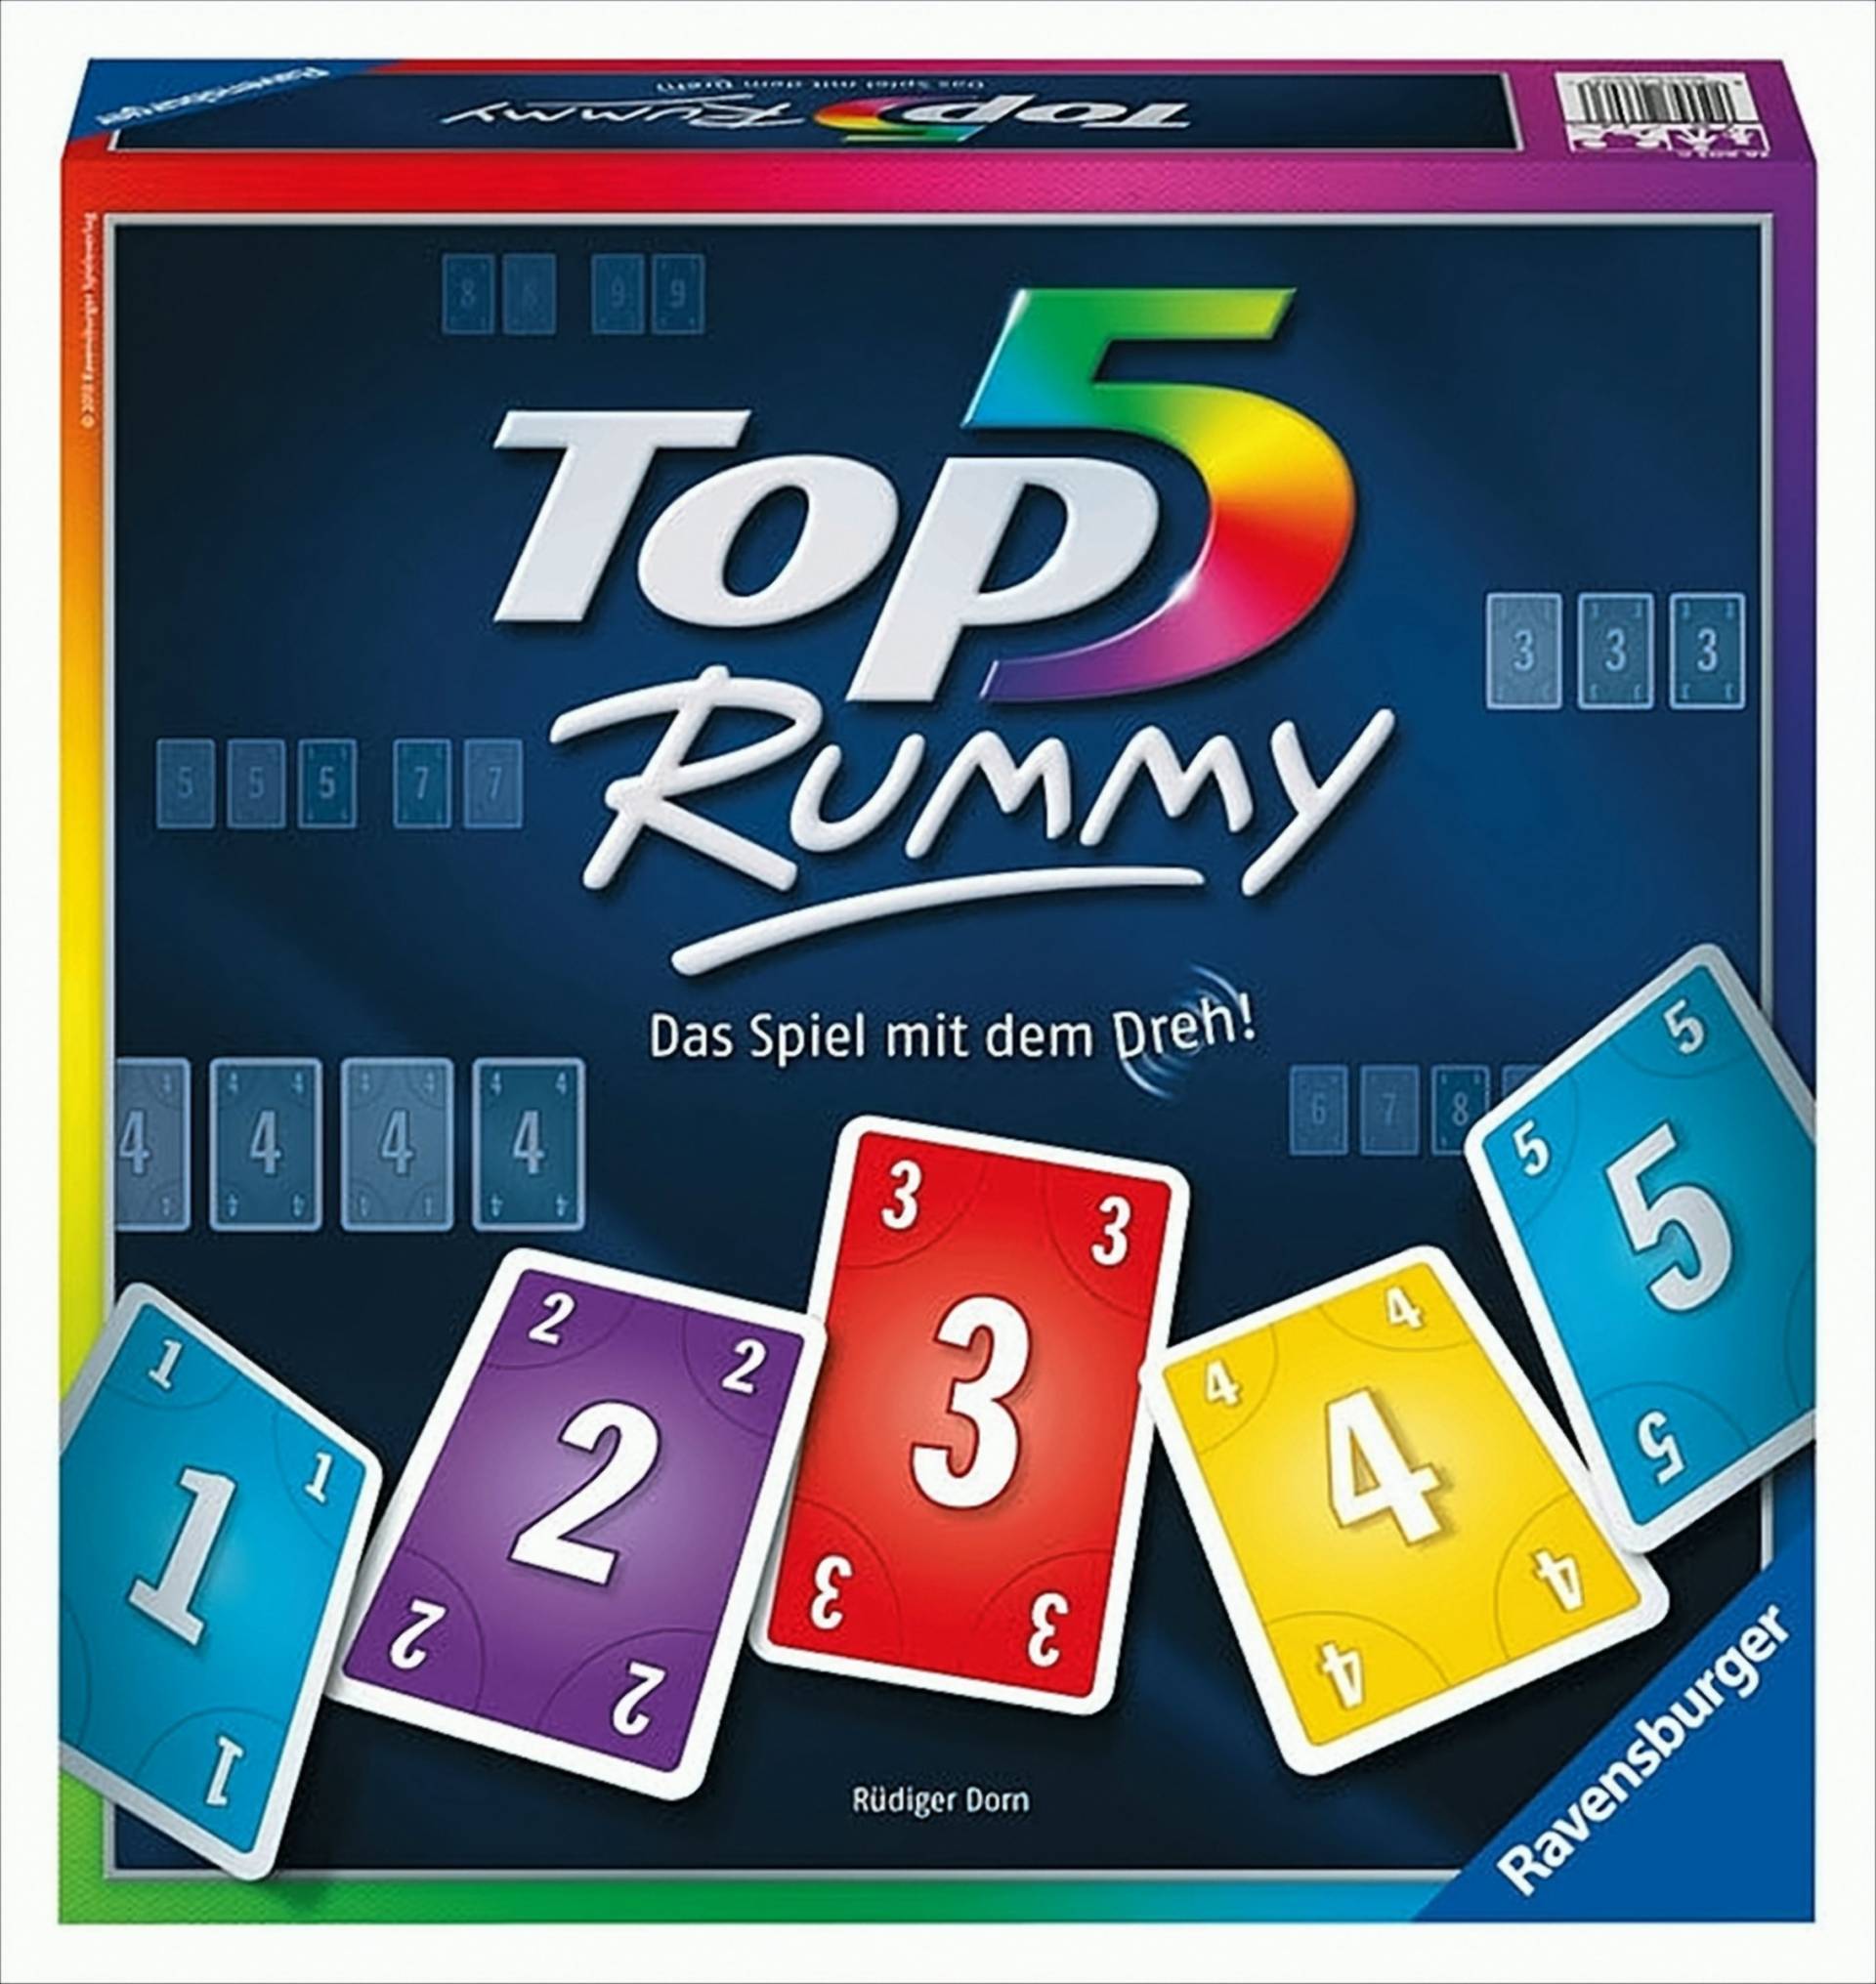 Top 5 Rummy - Das Spiel mit dem Dreh! von Ravensburger Spieleverlag